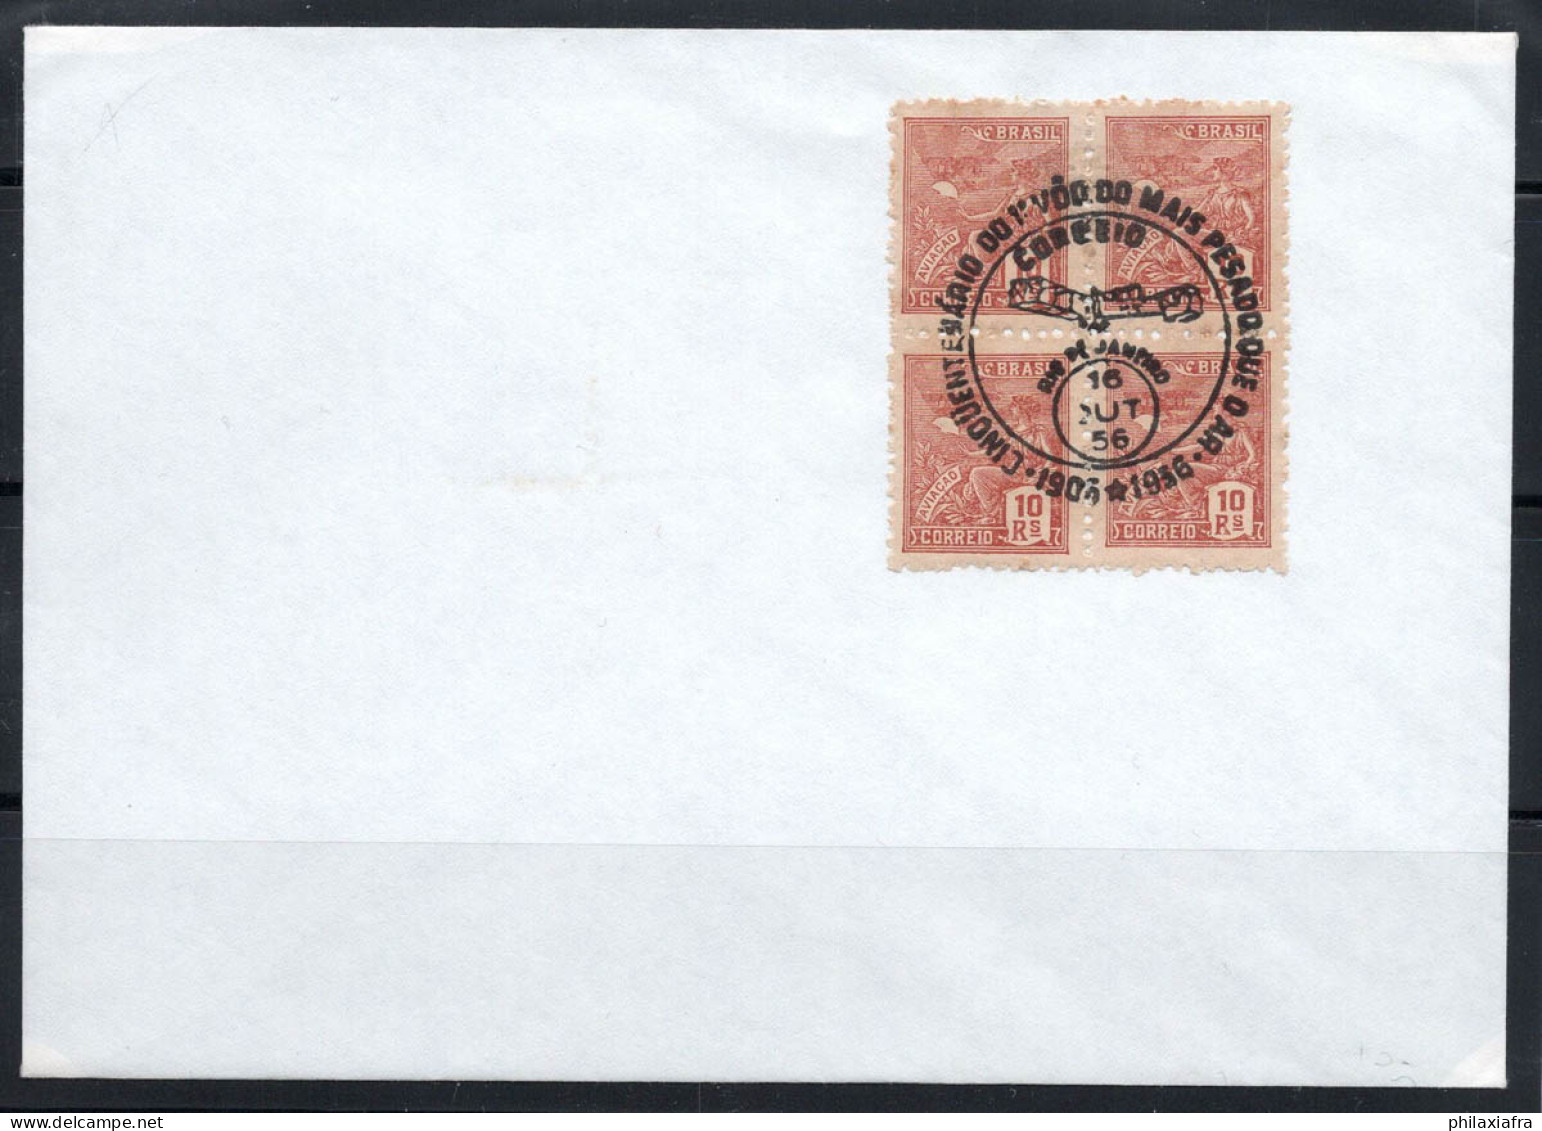 Brésil 1956 Enveloppe 100% Poste Aérienne Rio De Janiero - Storia Postale